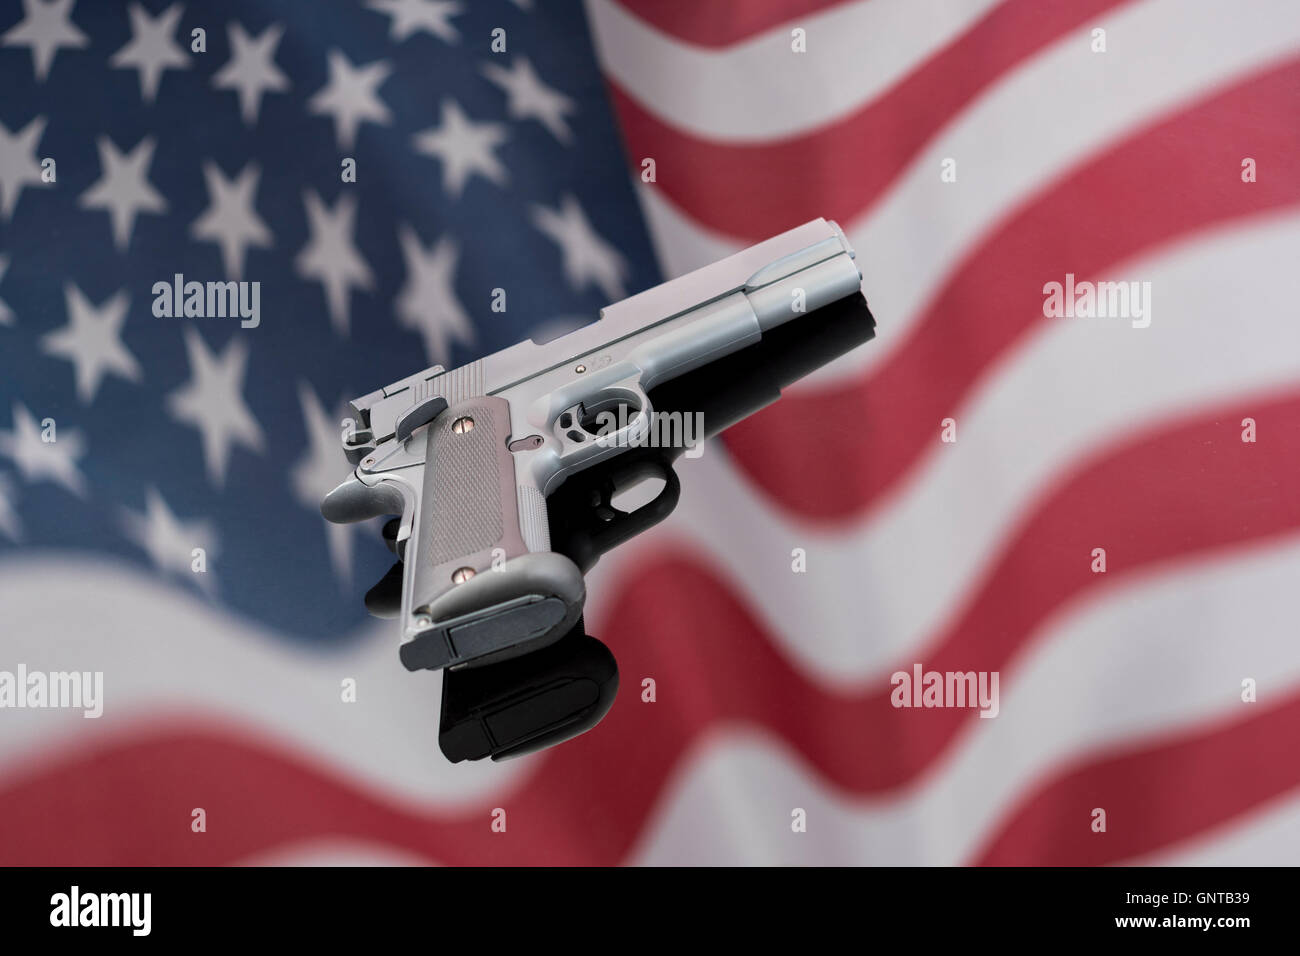 Replica Colt 1911A gegen Spiegelung der US-Flagge/Stars & Stripes - für Waffenkontrolle, US-Waffengesetze, Waffen, Verbrechenskonzept, Chicagoer Waffen, Gangs Waffen. Stockfoto